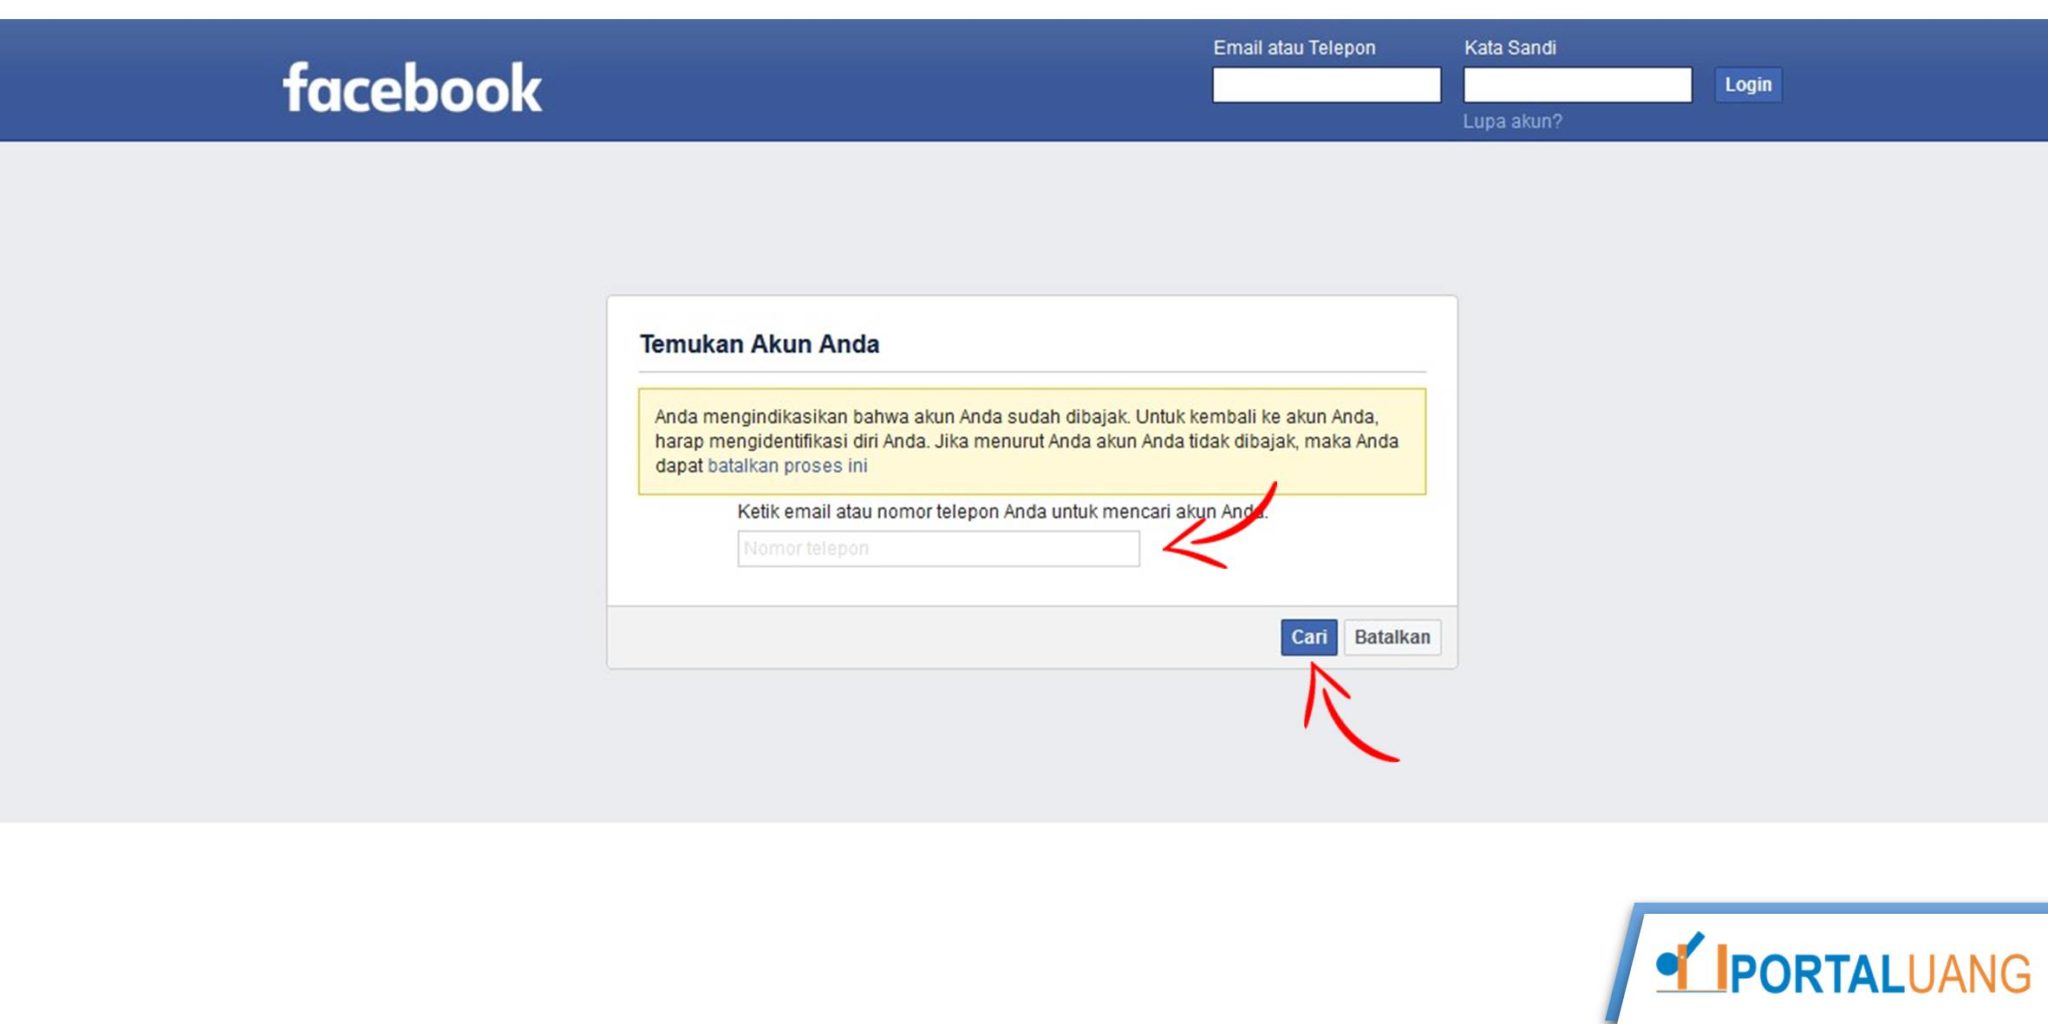 Akun Facebook : Cara Buat / Daftar, Ganti Nama, Hapus, Mengembalikan